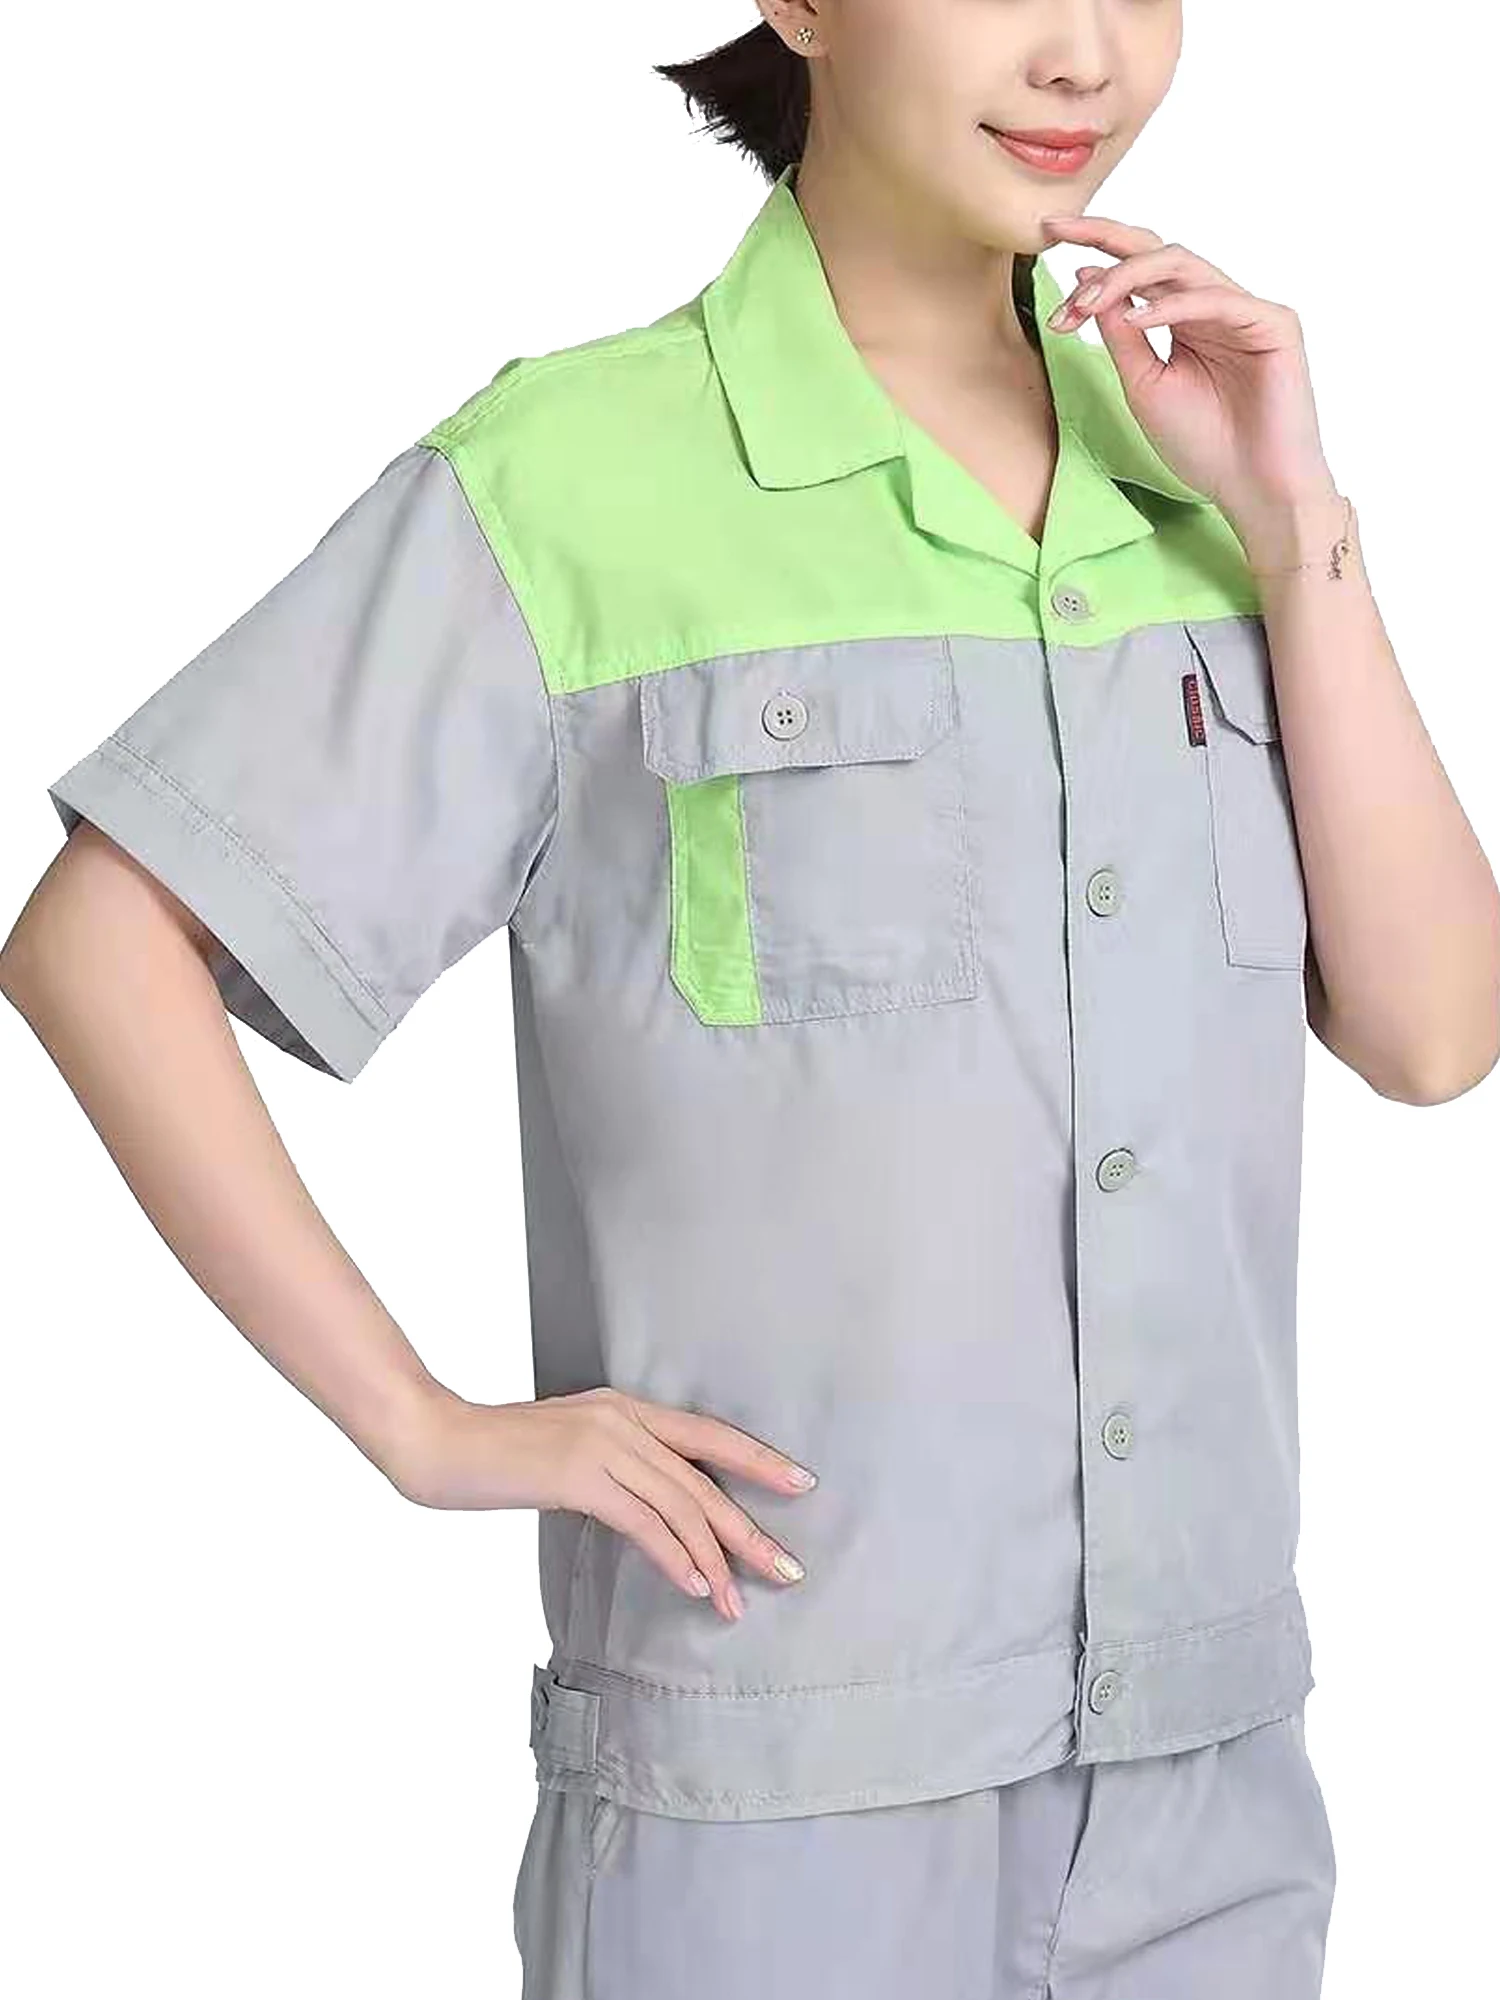 Мужские и женские рубашки для мастерской, Униформа, рабочая одежда с коротким рукавом, рабочая одежда для мастерской, униформа для автомеханика, рубашка с пуговицами